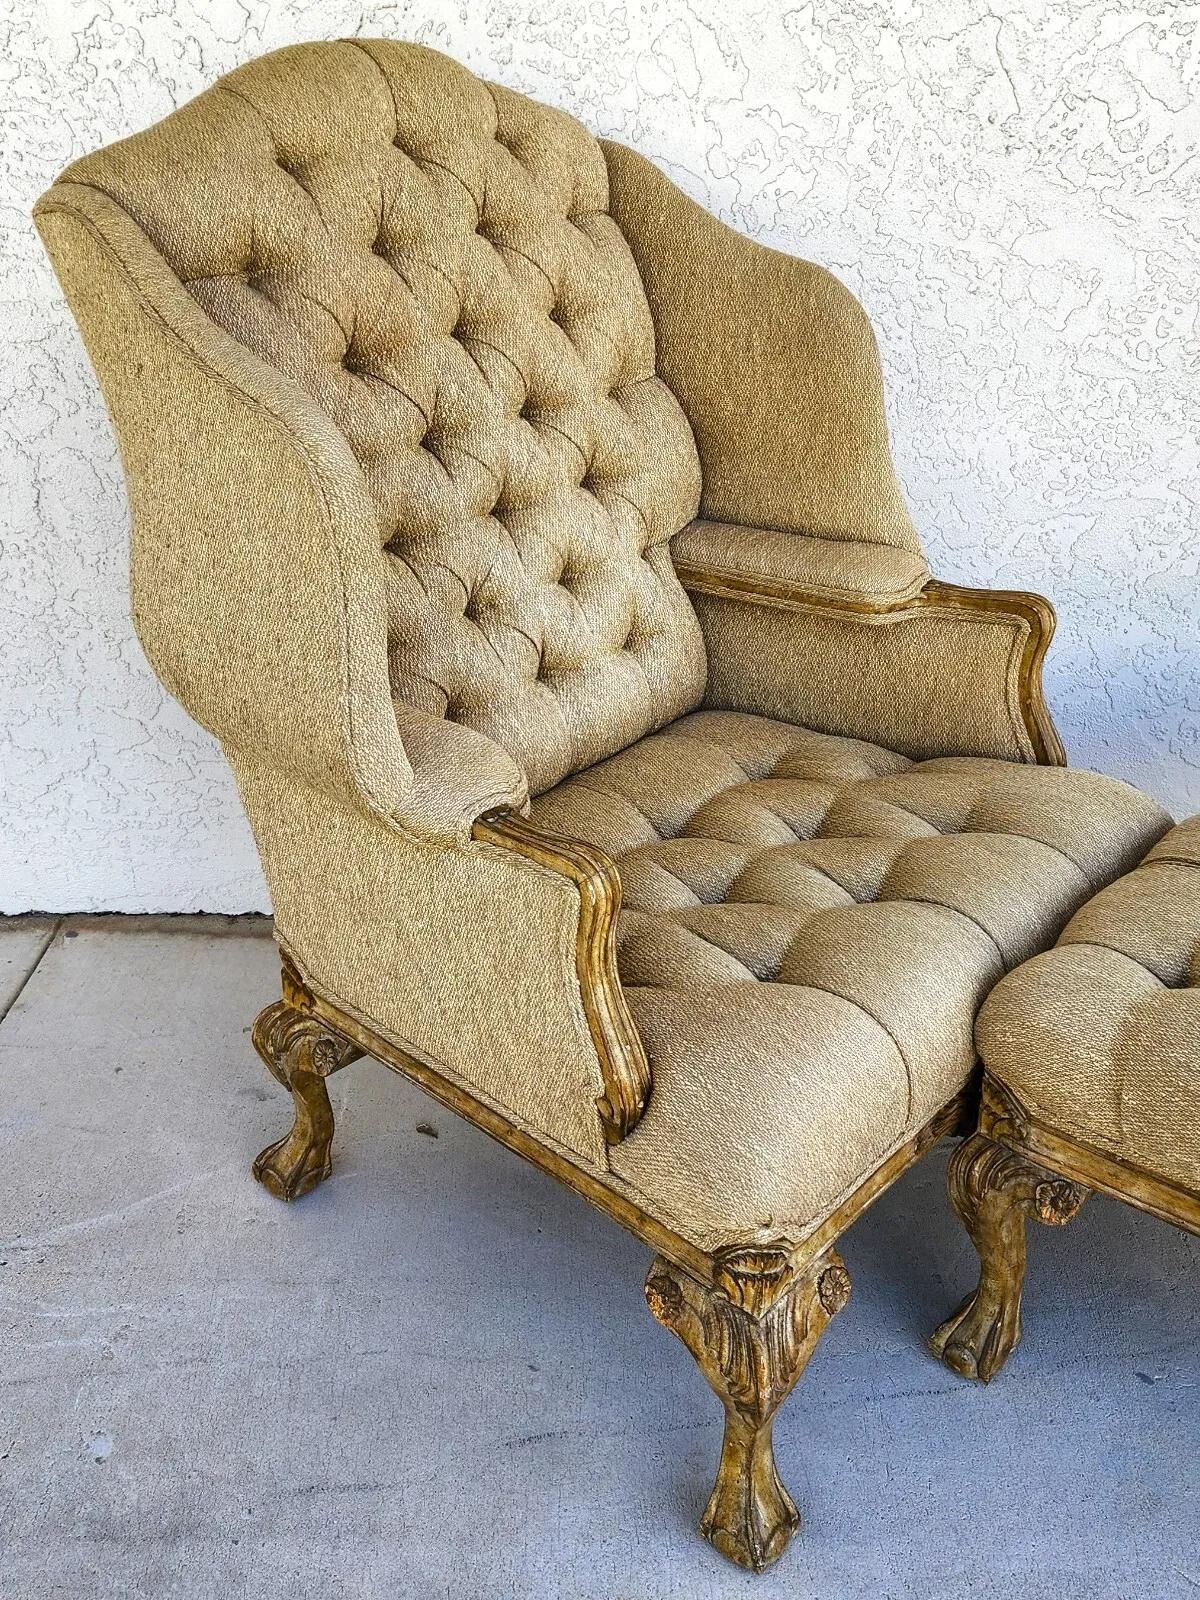 Pour une description complète de l'article, cliquez sur CONTINUER LA LECTURE au bas de cette page.

Offrant l'une de nos récentes acquisitions de meubles fins Palm Beach Estate de A
Ensemble de chaises et d'ottomans de style Louis XV

Mesures